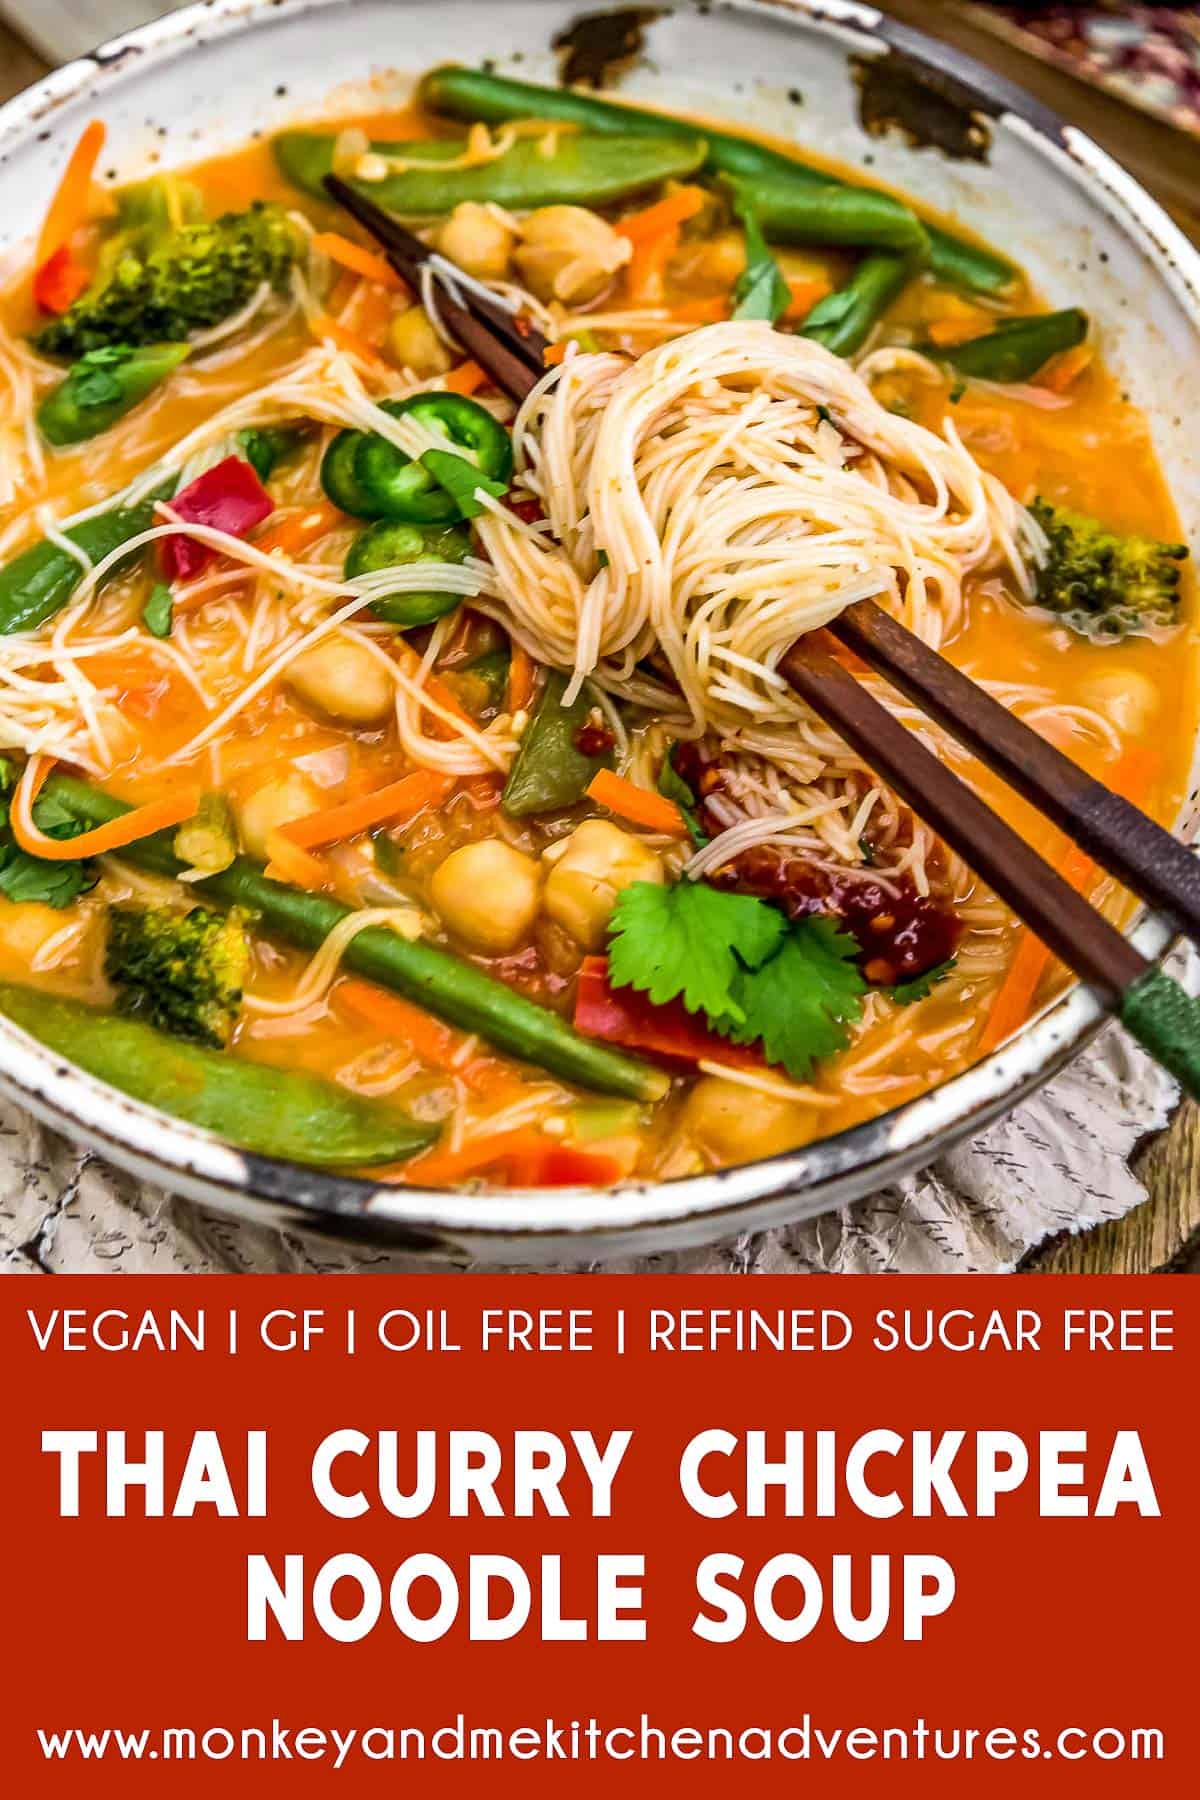 Thai Curry Chickpea Noodle Soup with text description